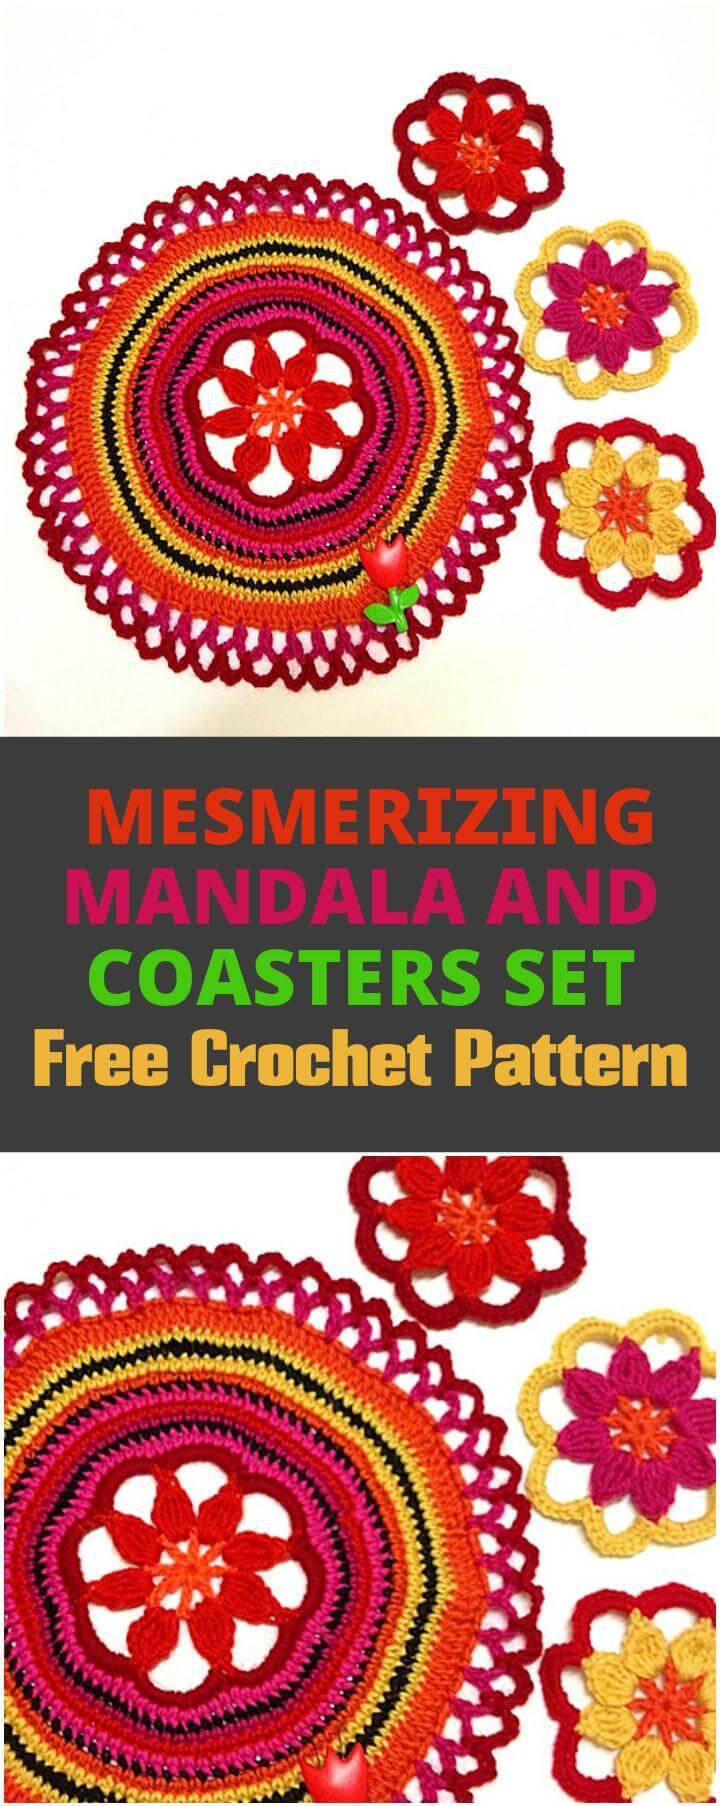 crochet mandala and coasters set